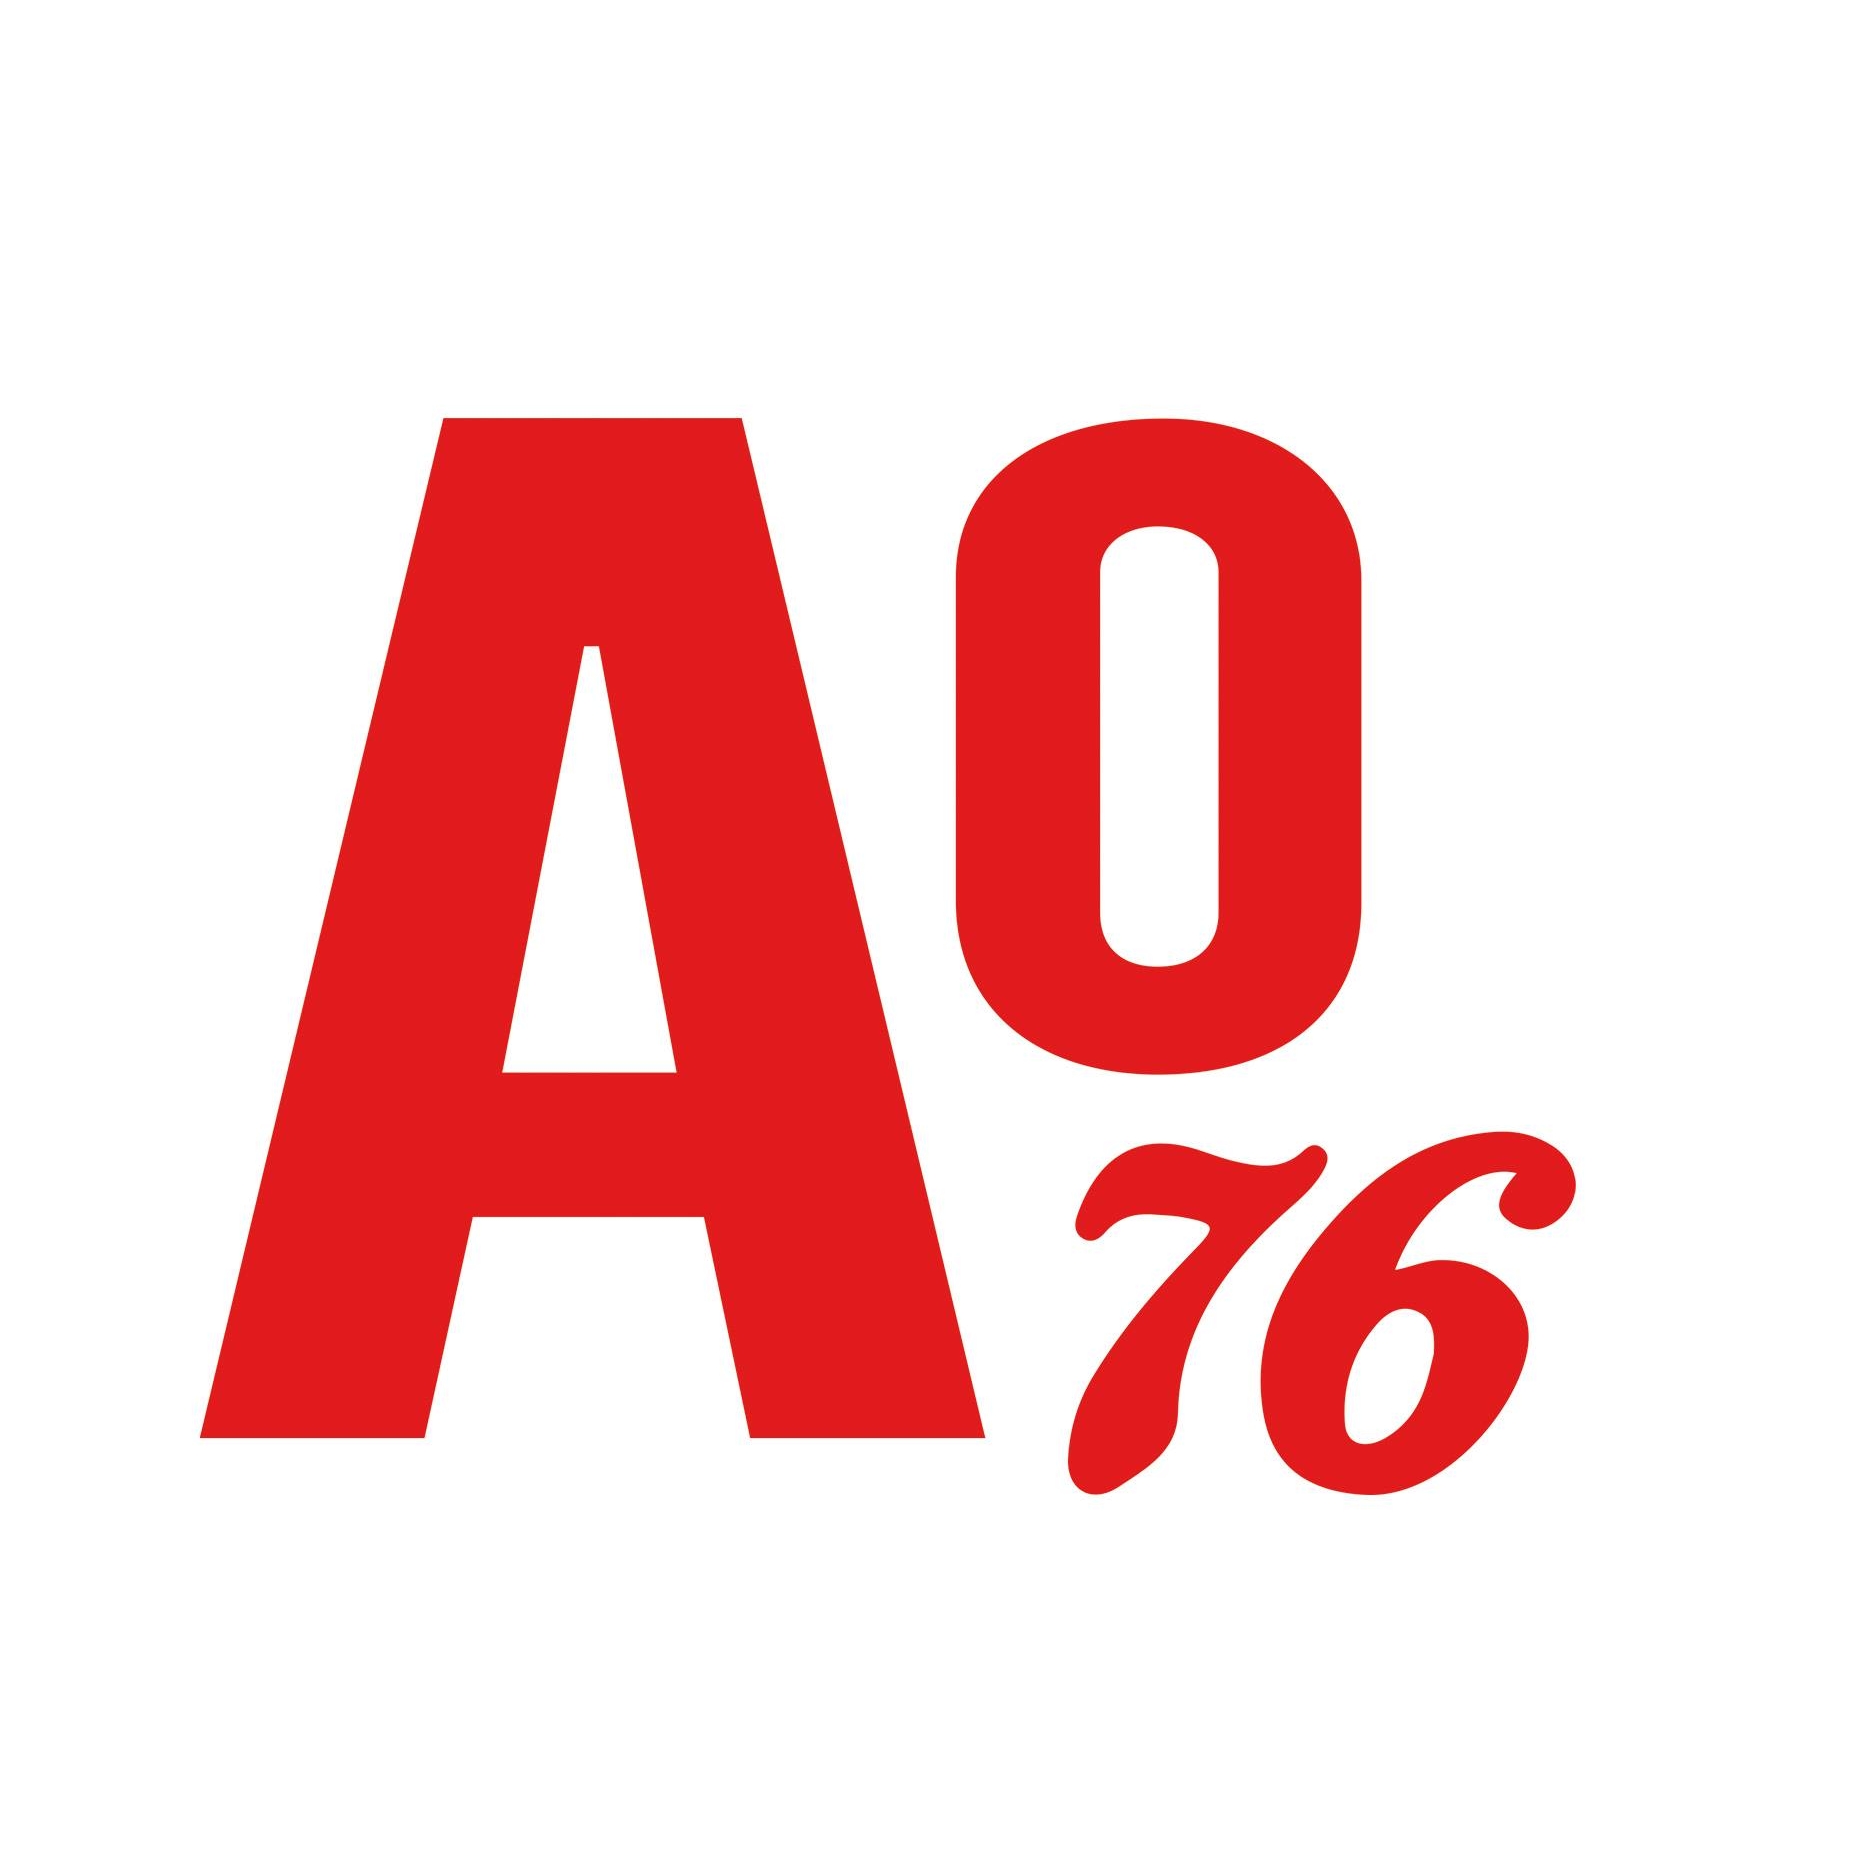 AO76